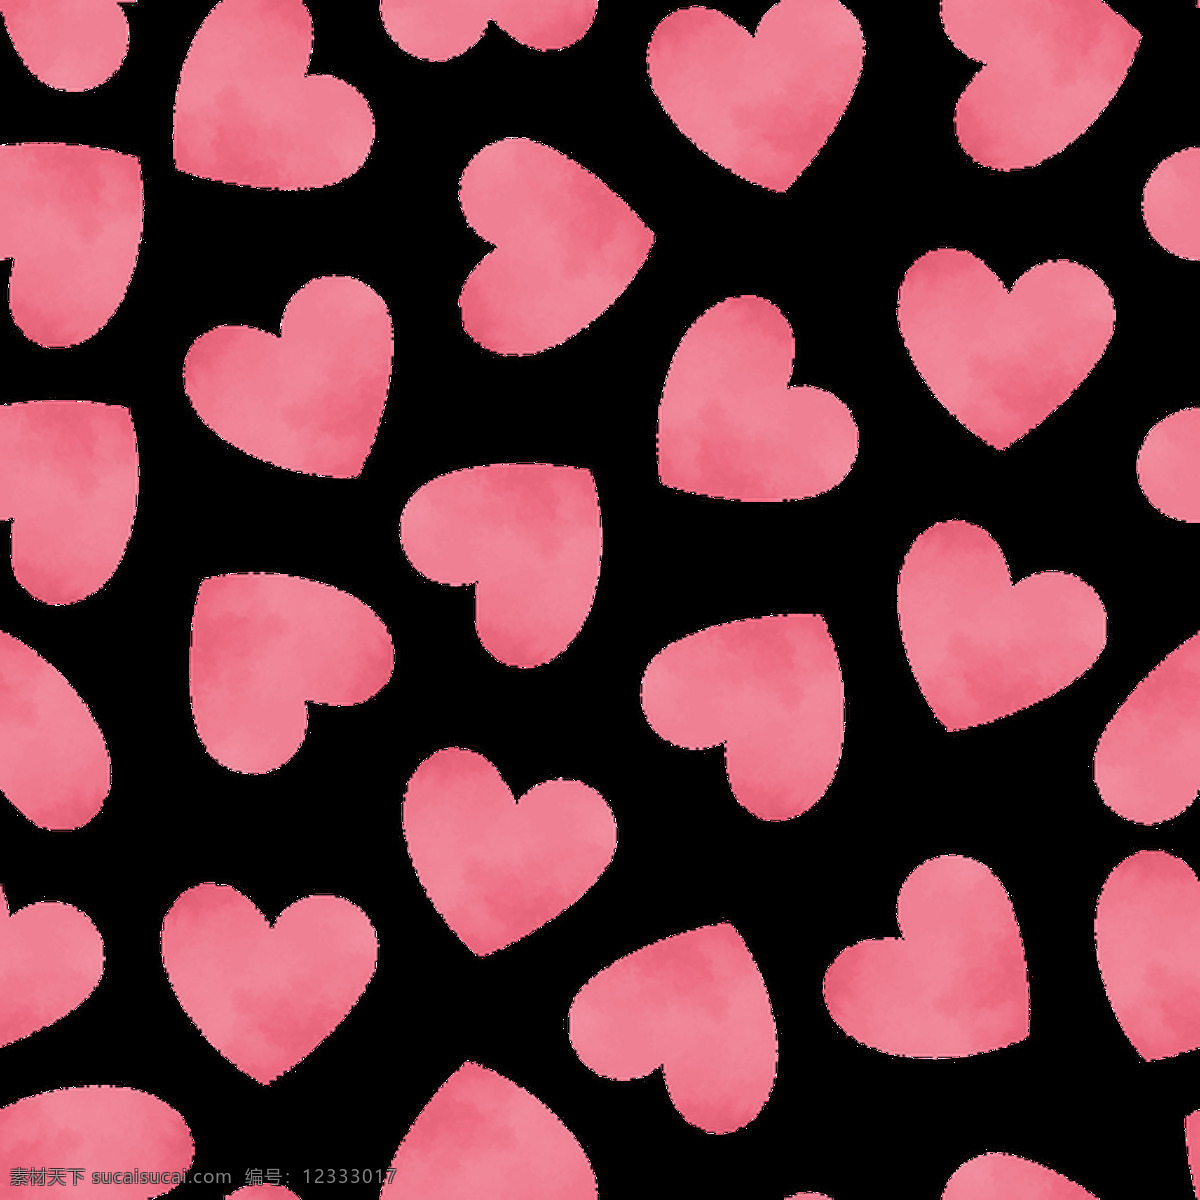 爱情 爱心卡 通 背景 粉色 红色 平面素材 设计素材 矢量素材